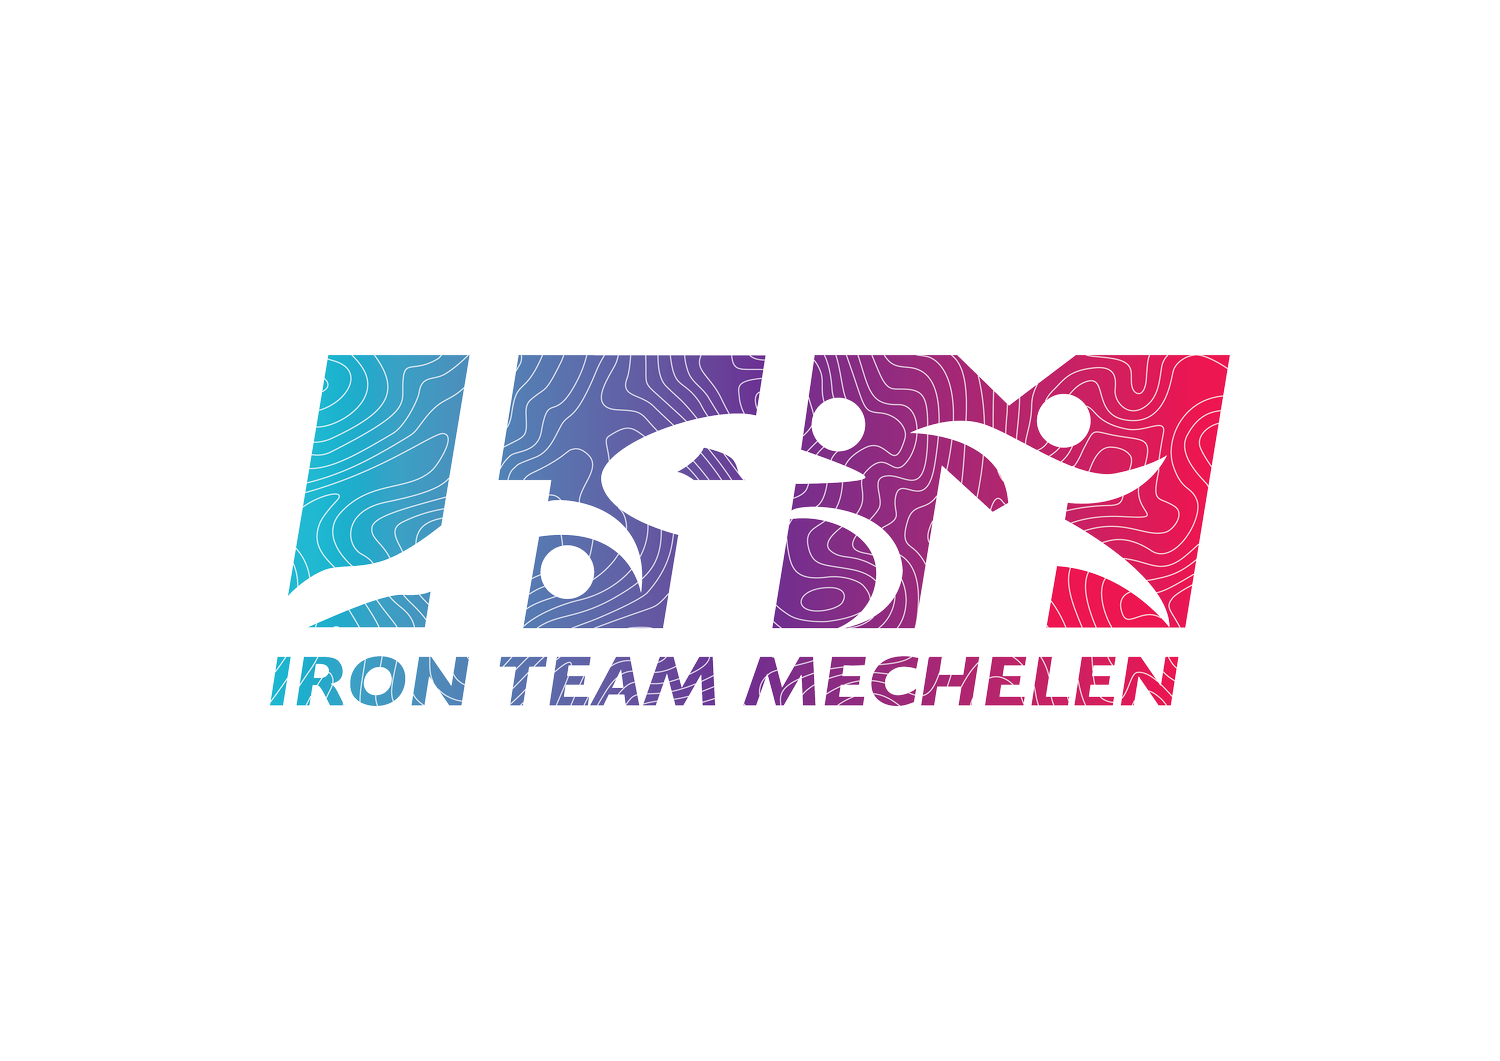 Iron Team Mechelen